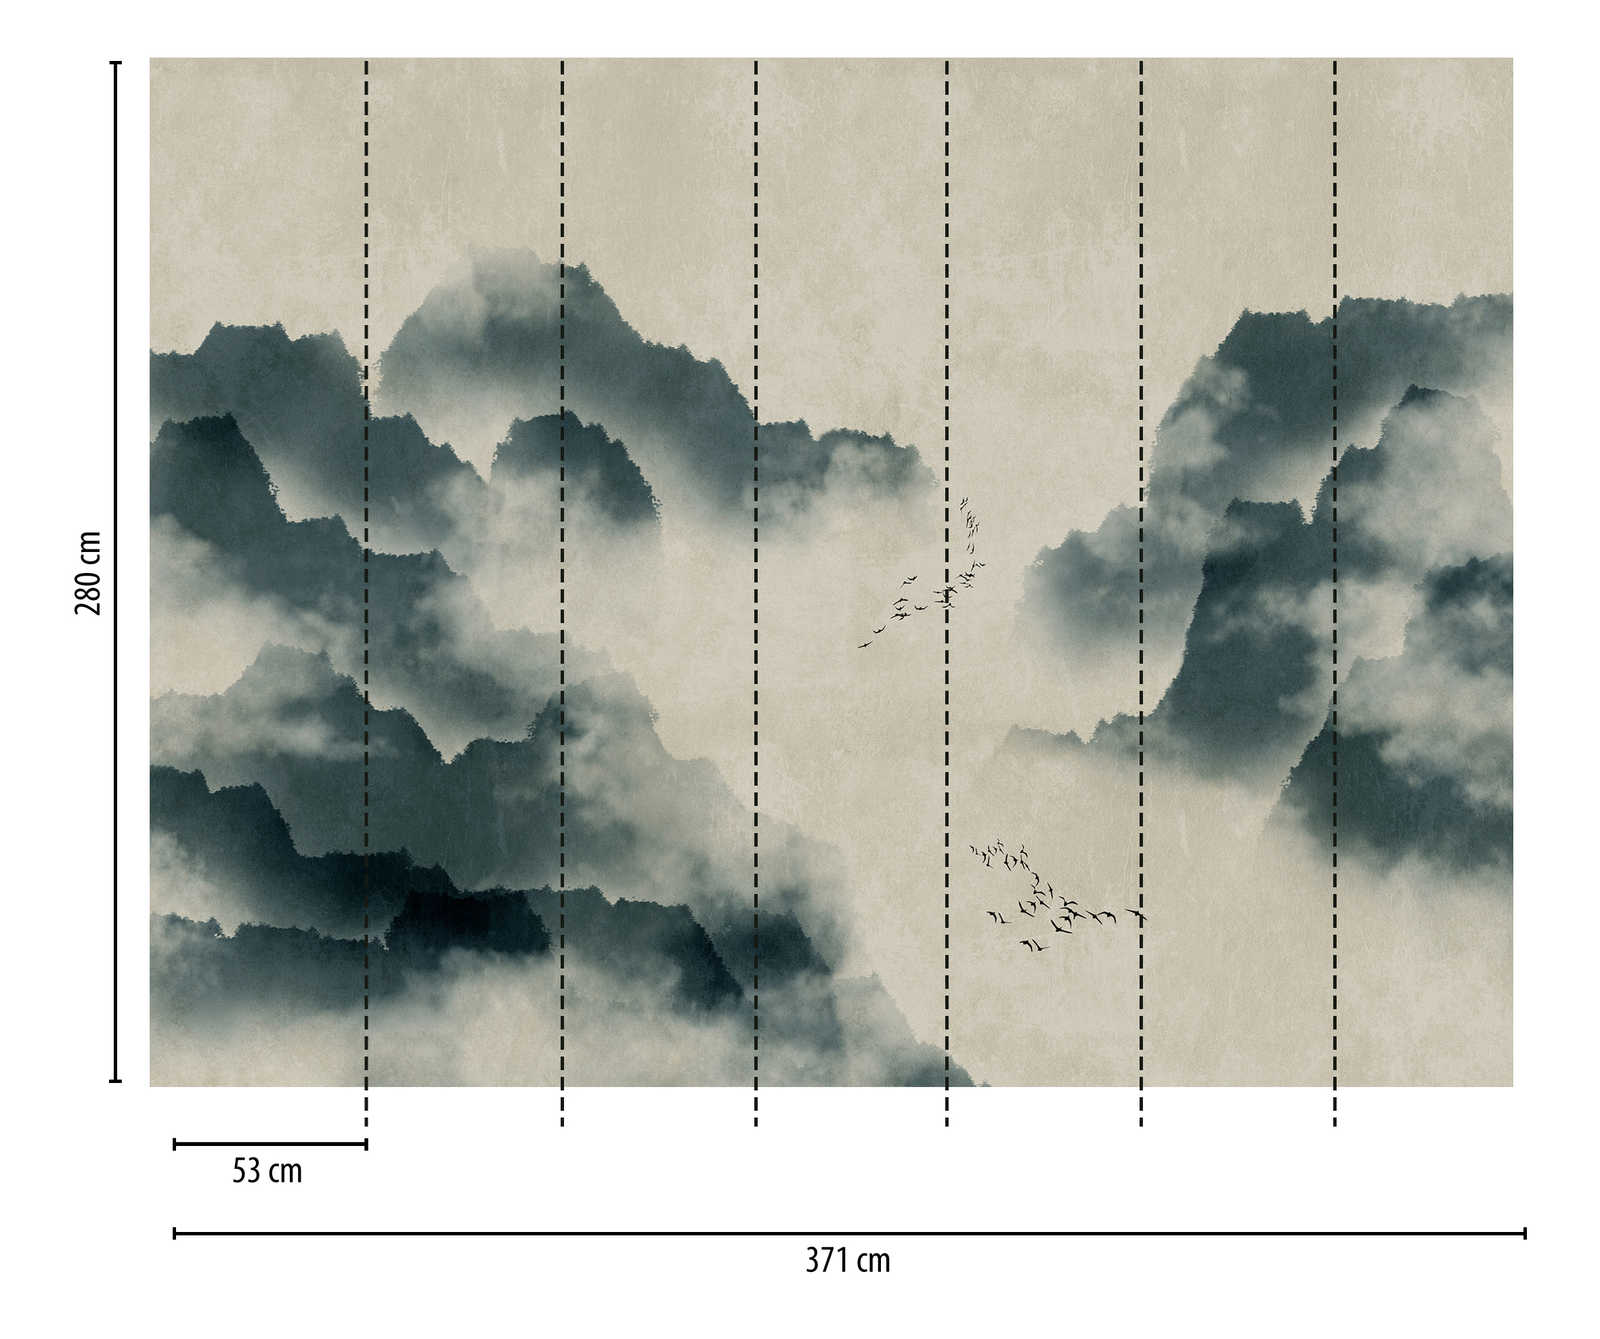             Behang nieuwigheid | aquarel motief behang met bergen, mist & zwerm vogels
        